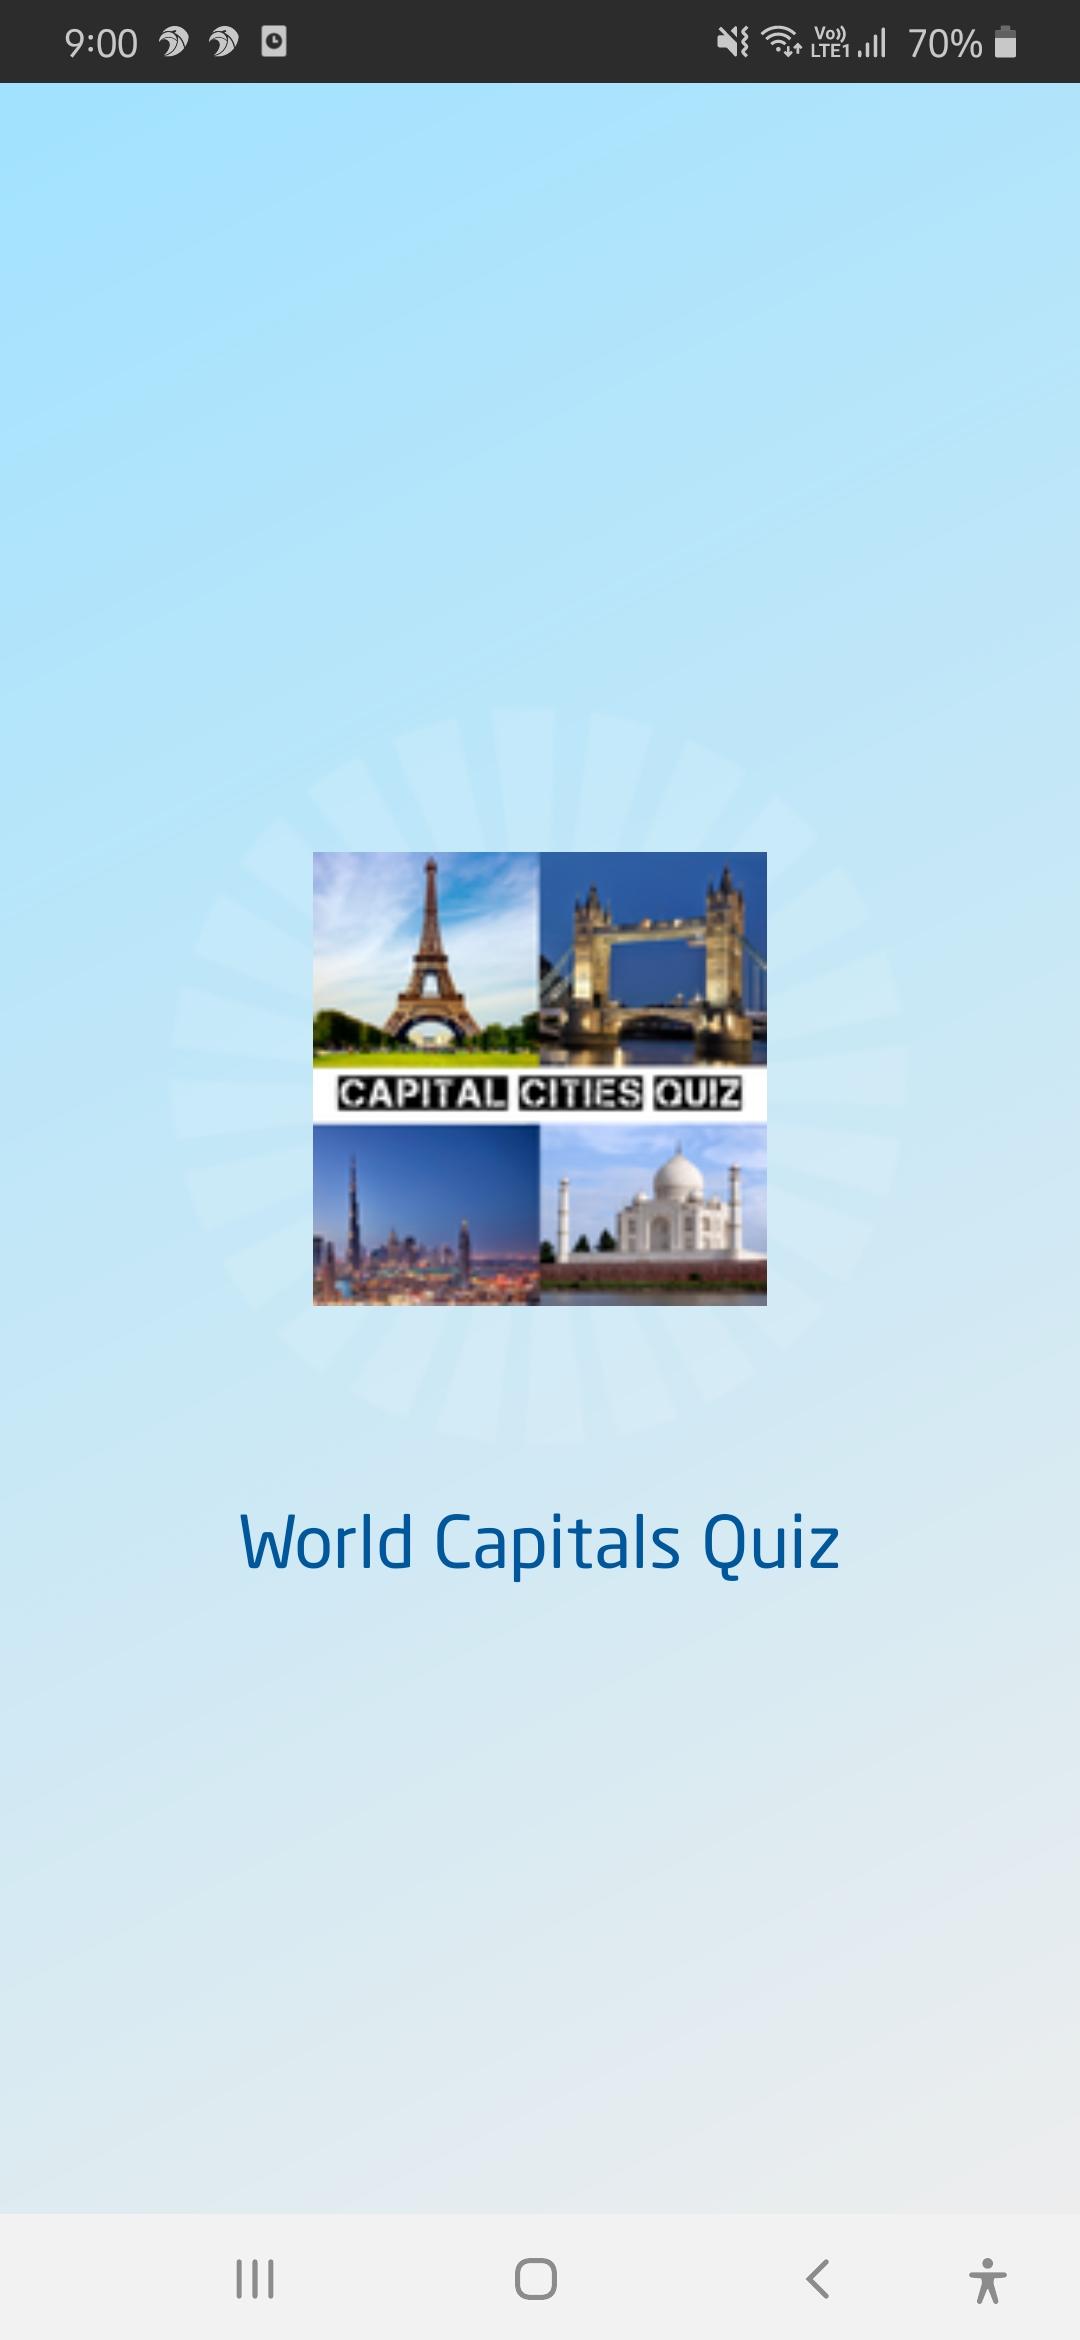 Capital Cities Quiz - World Capitals Quiz Game 3.0 Screenshot 11